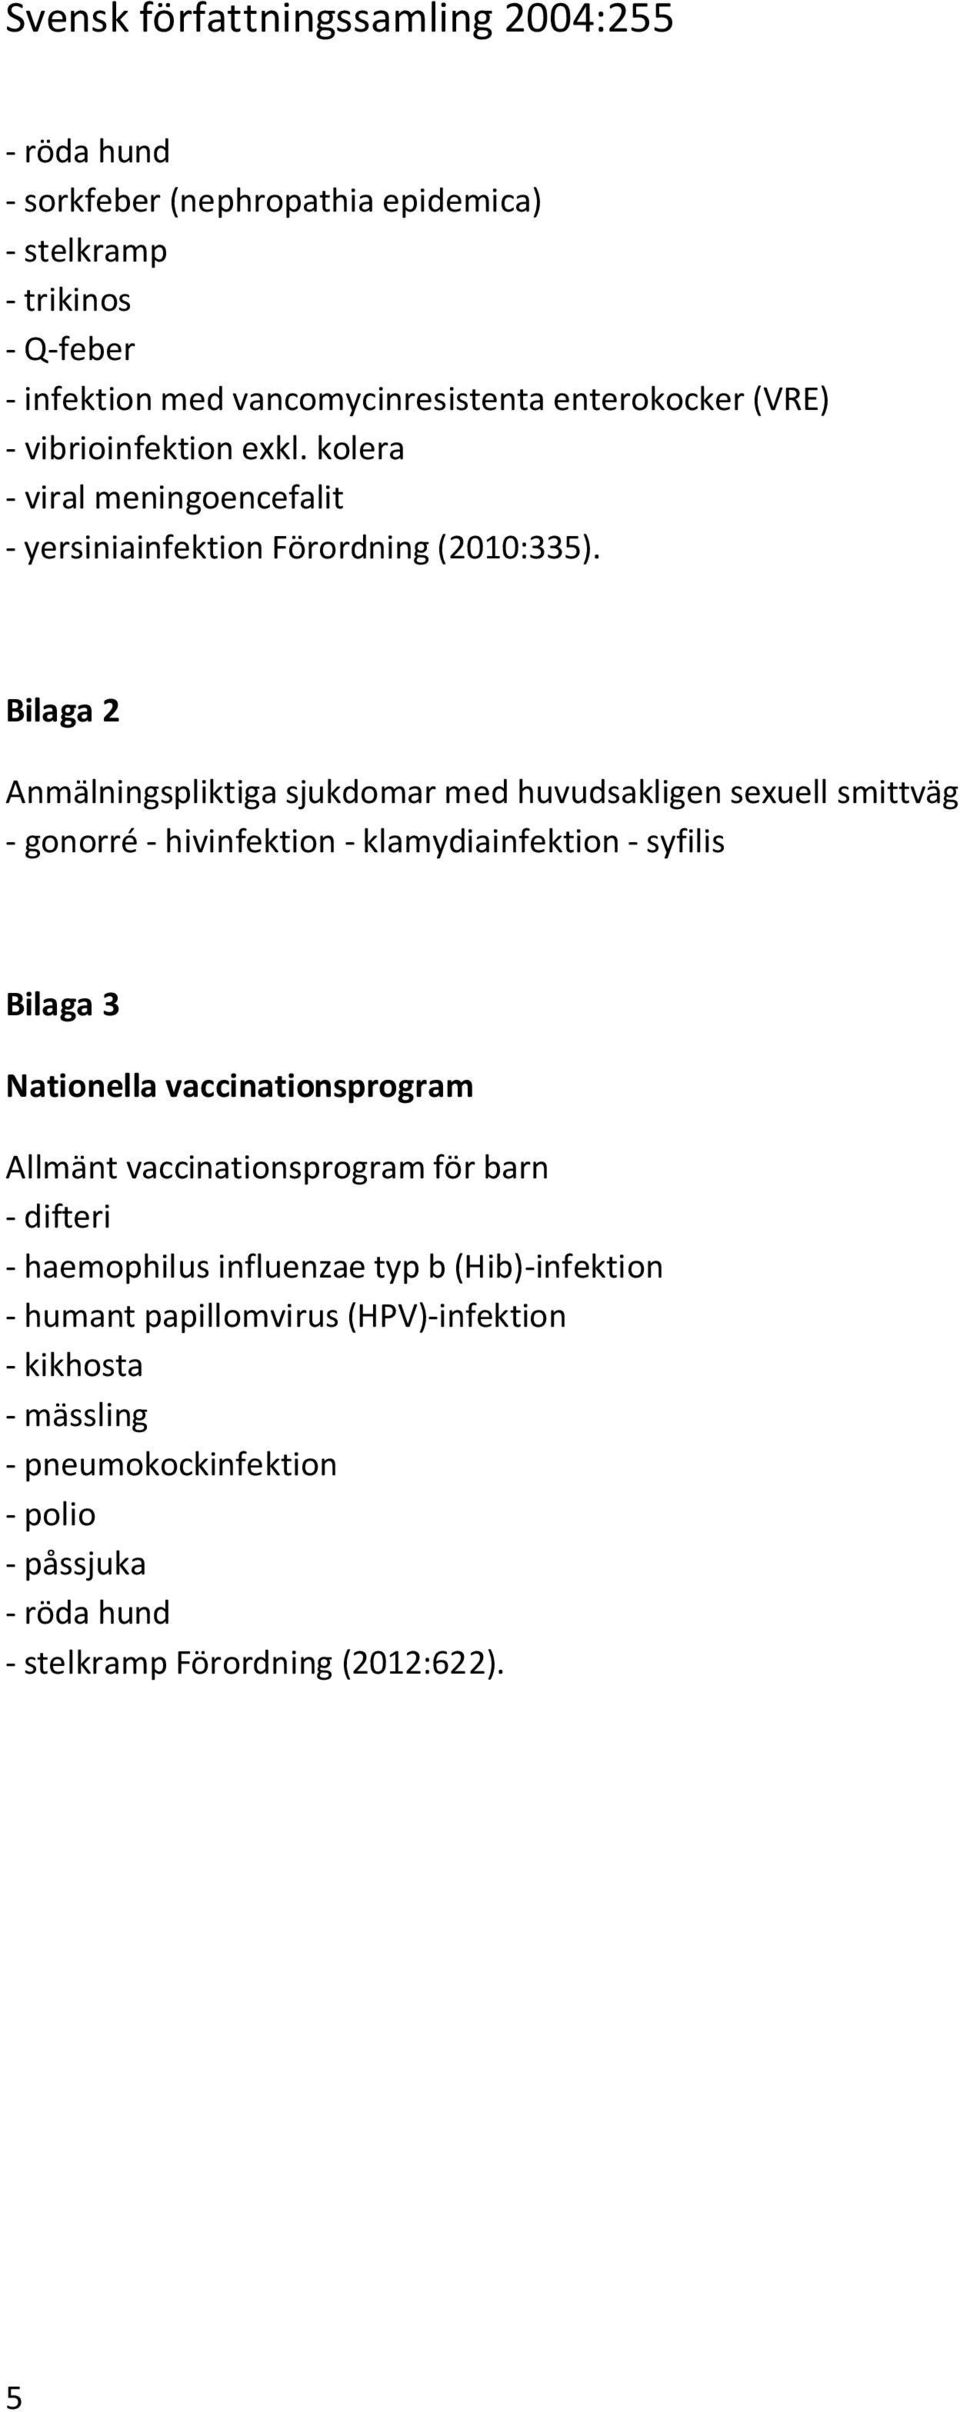 Bilaga 2 Anmälningspliktiga sjukdomar med huvudsakligen sexuell smittväg - gonorré - hivinfektion - klamydiainfektion - syfilis Bilaga 3 Nationella